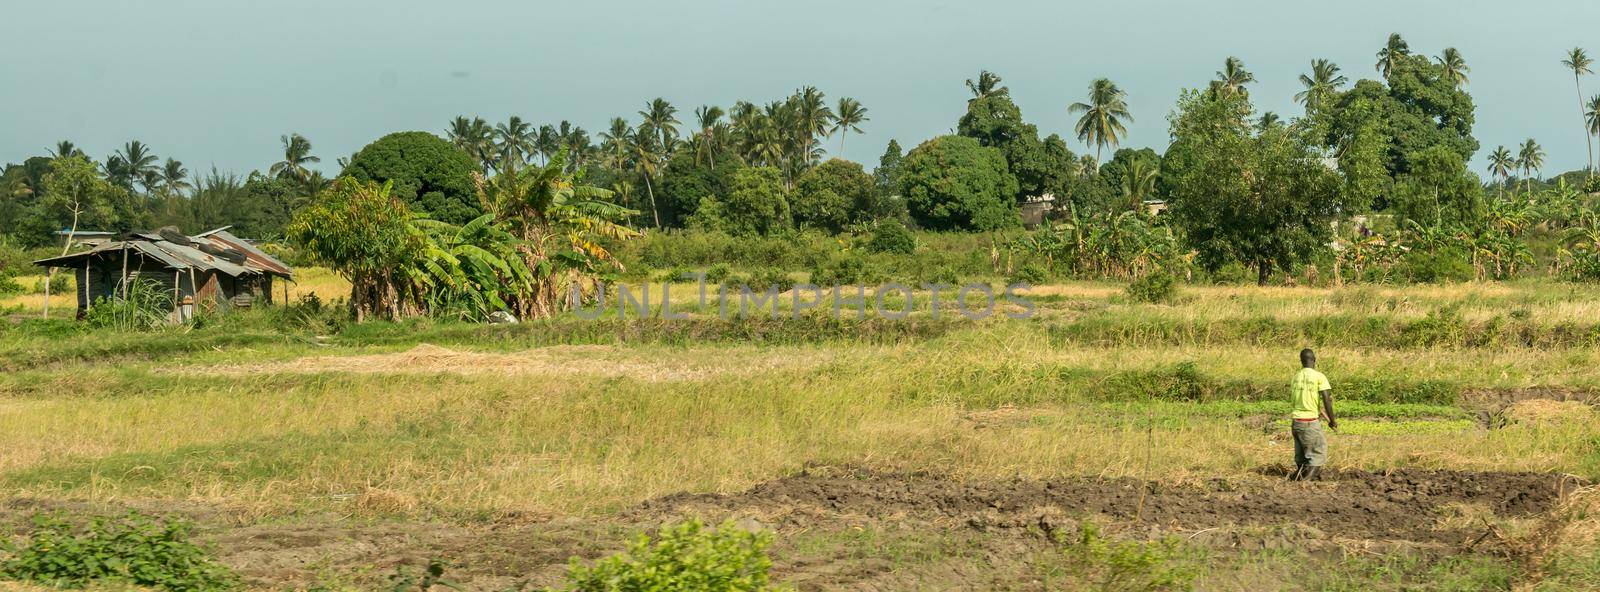 field with man farming in Zanzibar by tan4ikk1